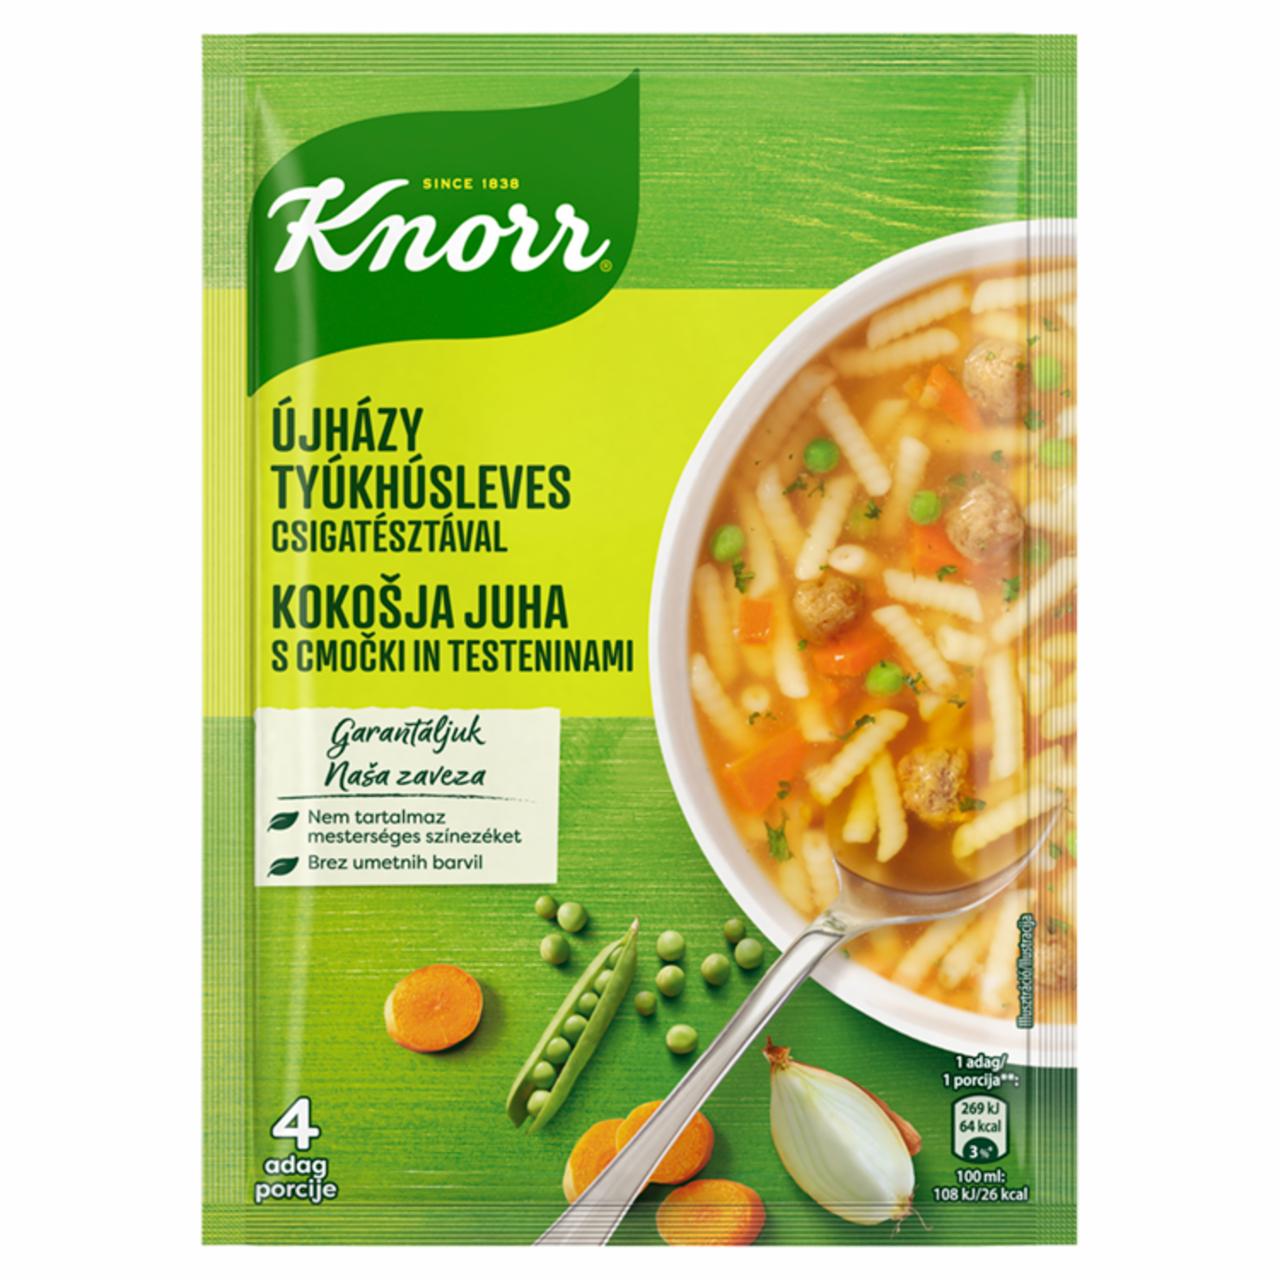 Képek - Knorr Újházy tyúkhúsleves csigatésztával 67 g